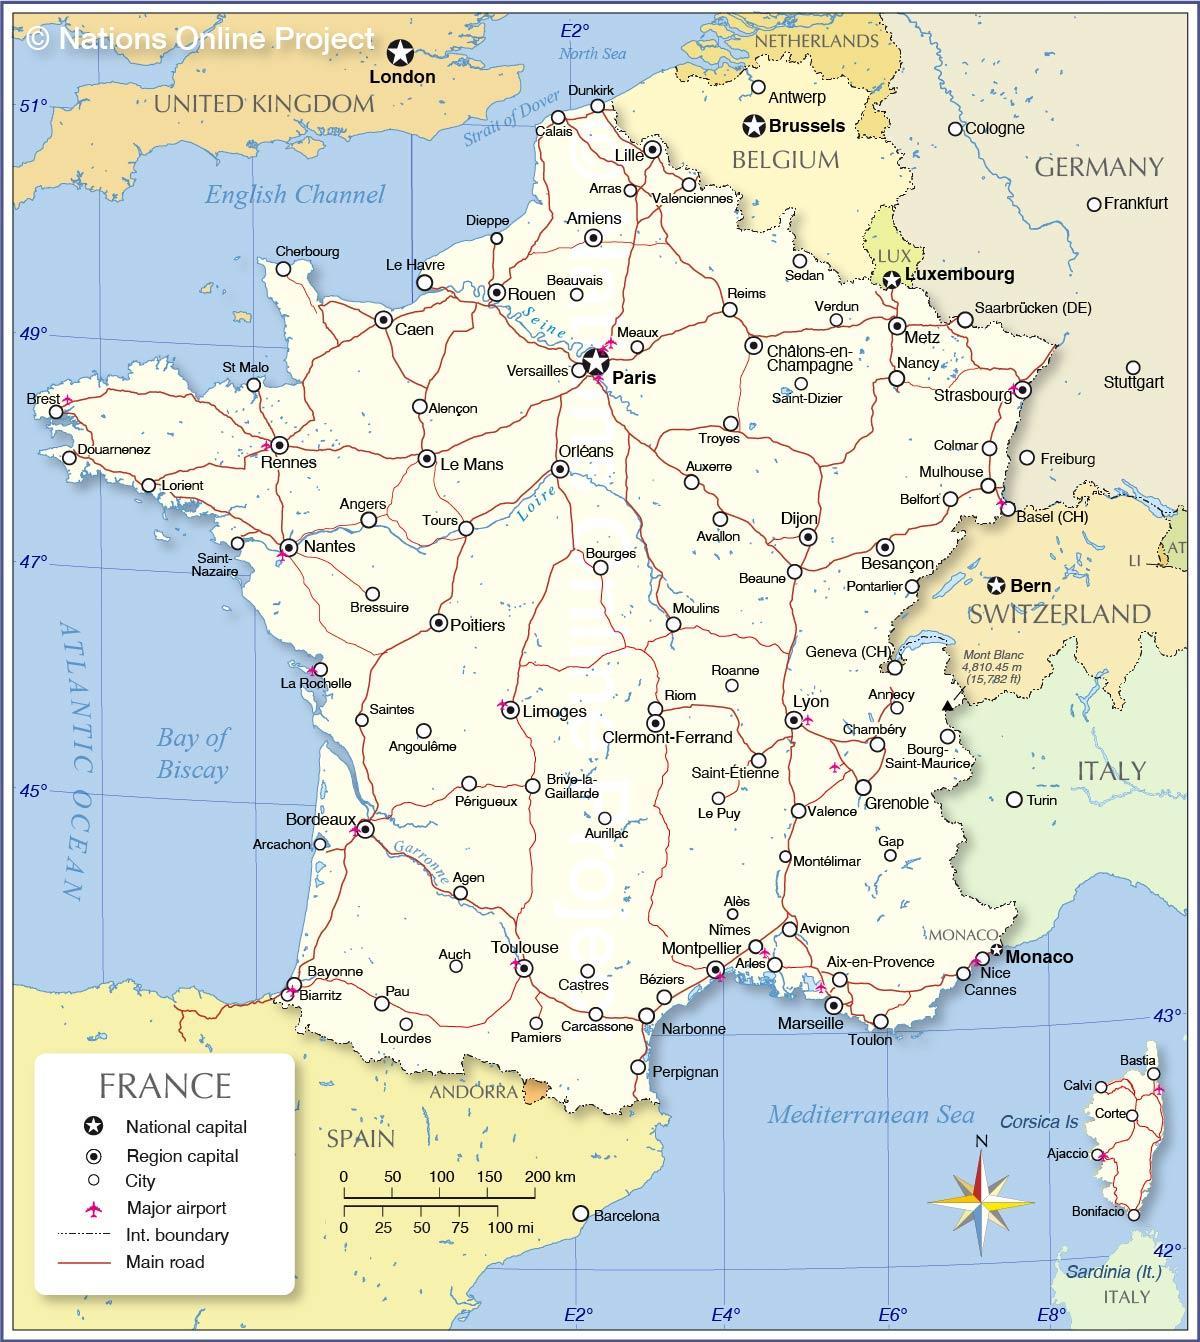 Internationale luchthavens in Frankrijk kaart - Frankrijk luchthavens ...